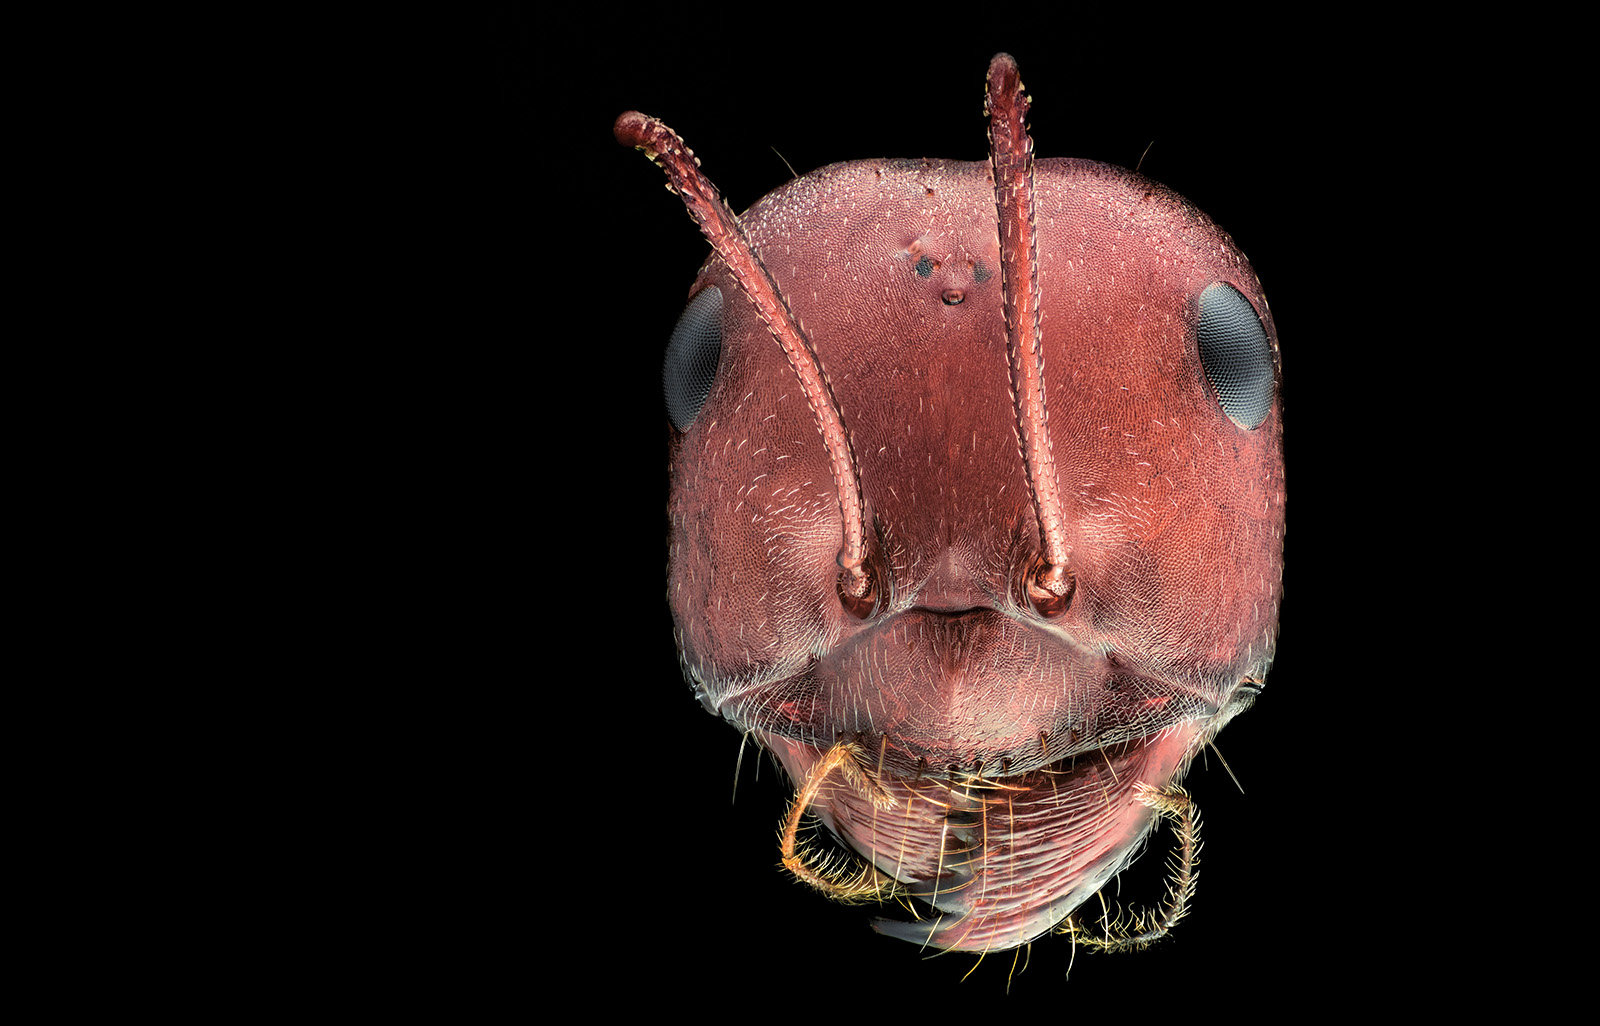 Das Bild zeigt einen Ameisenkopf in einer sehr großen Nahaufnahme